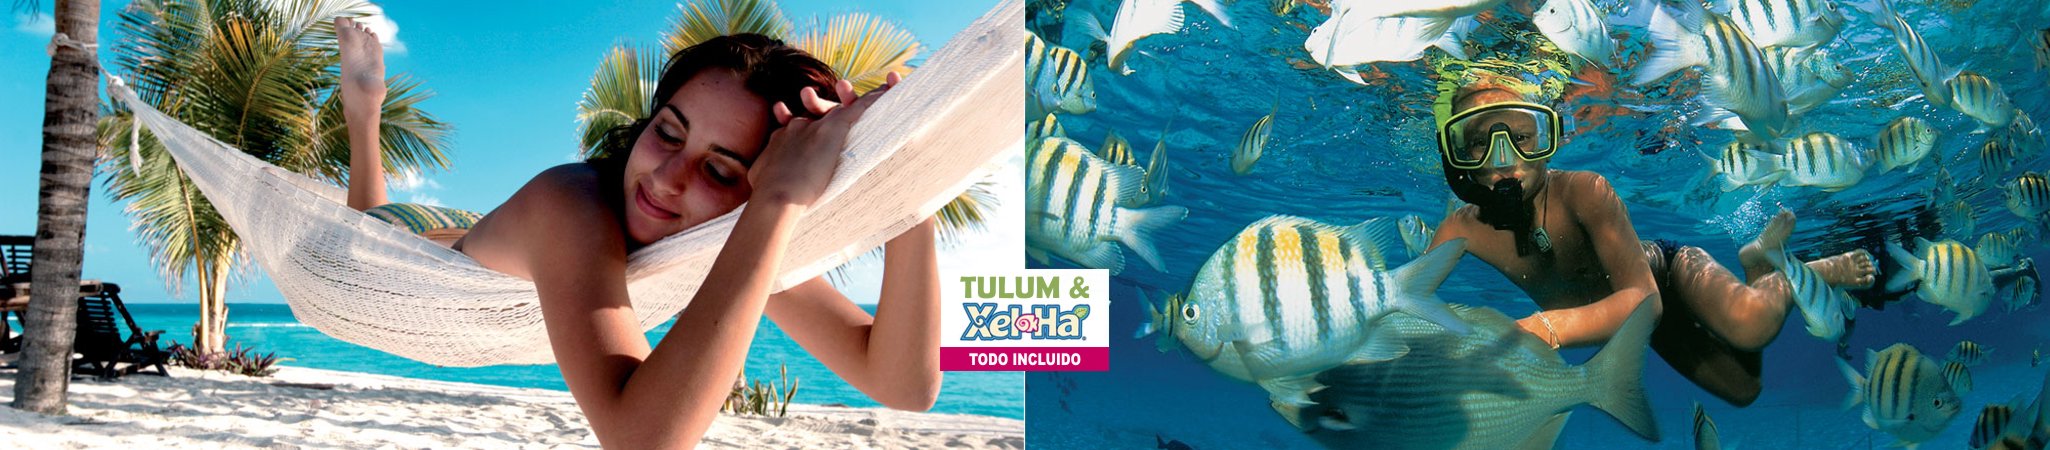 Excursion barato a Tulum desde Playa del Carmen y Cancun